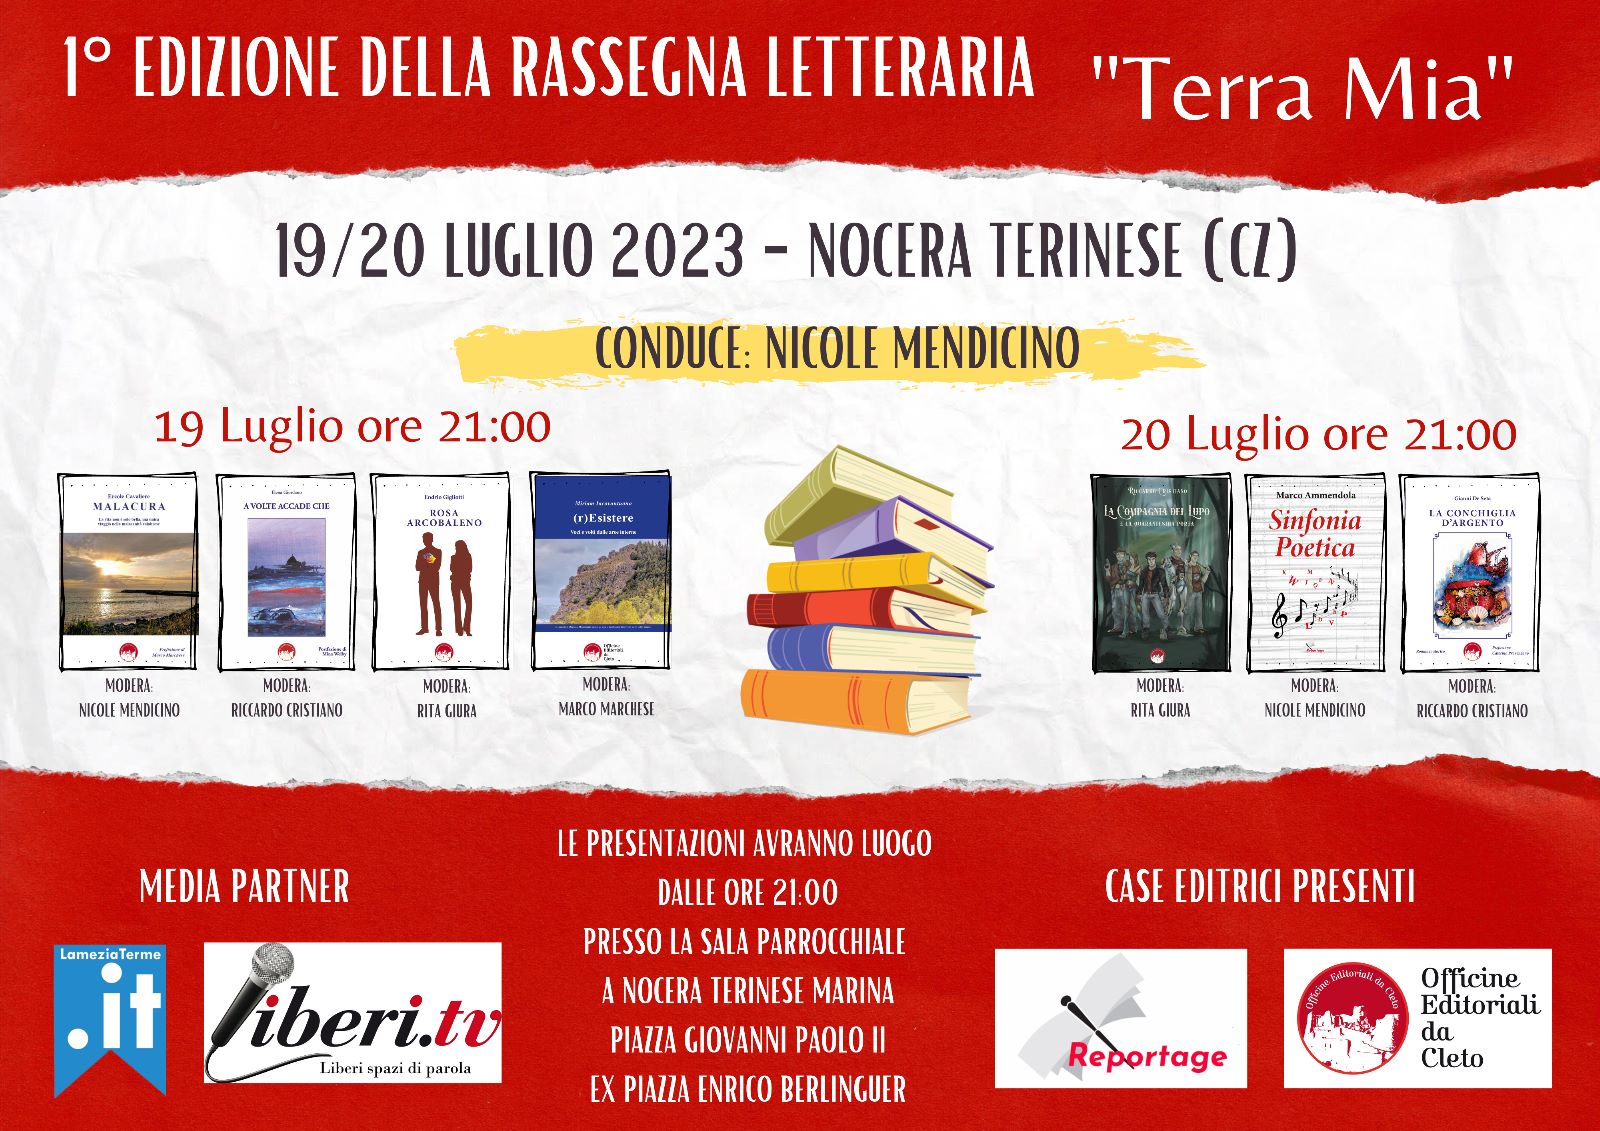 Nasce a Nocera Terinese "Terra Mia", rassegna letteraria che parla di Calabria e Calabresi